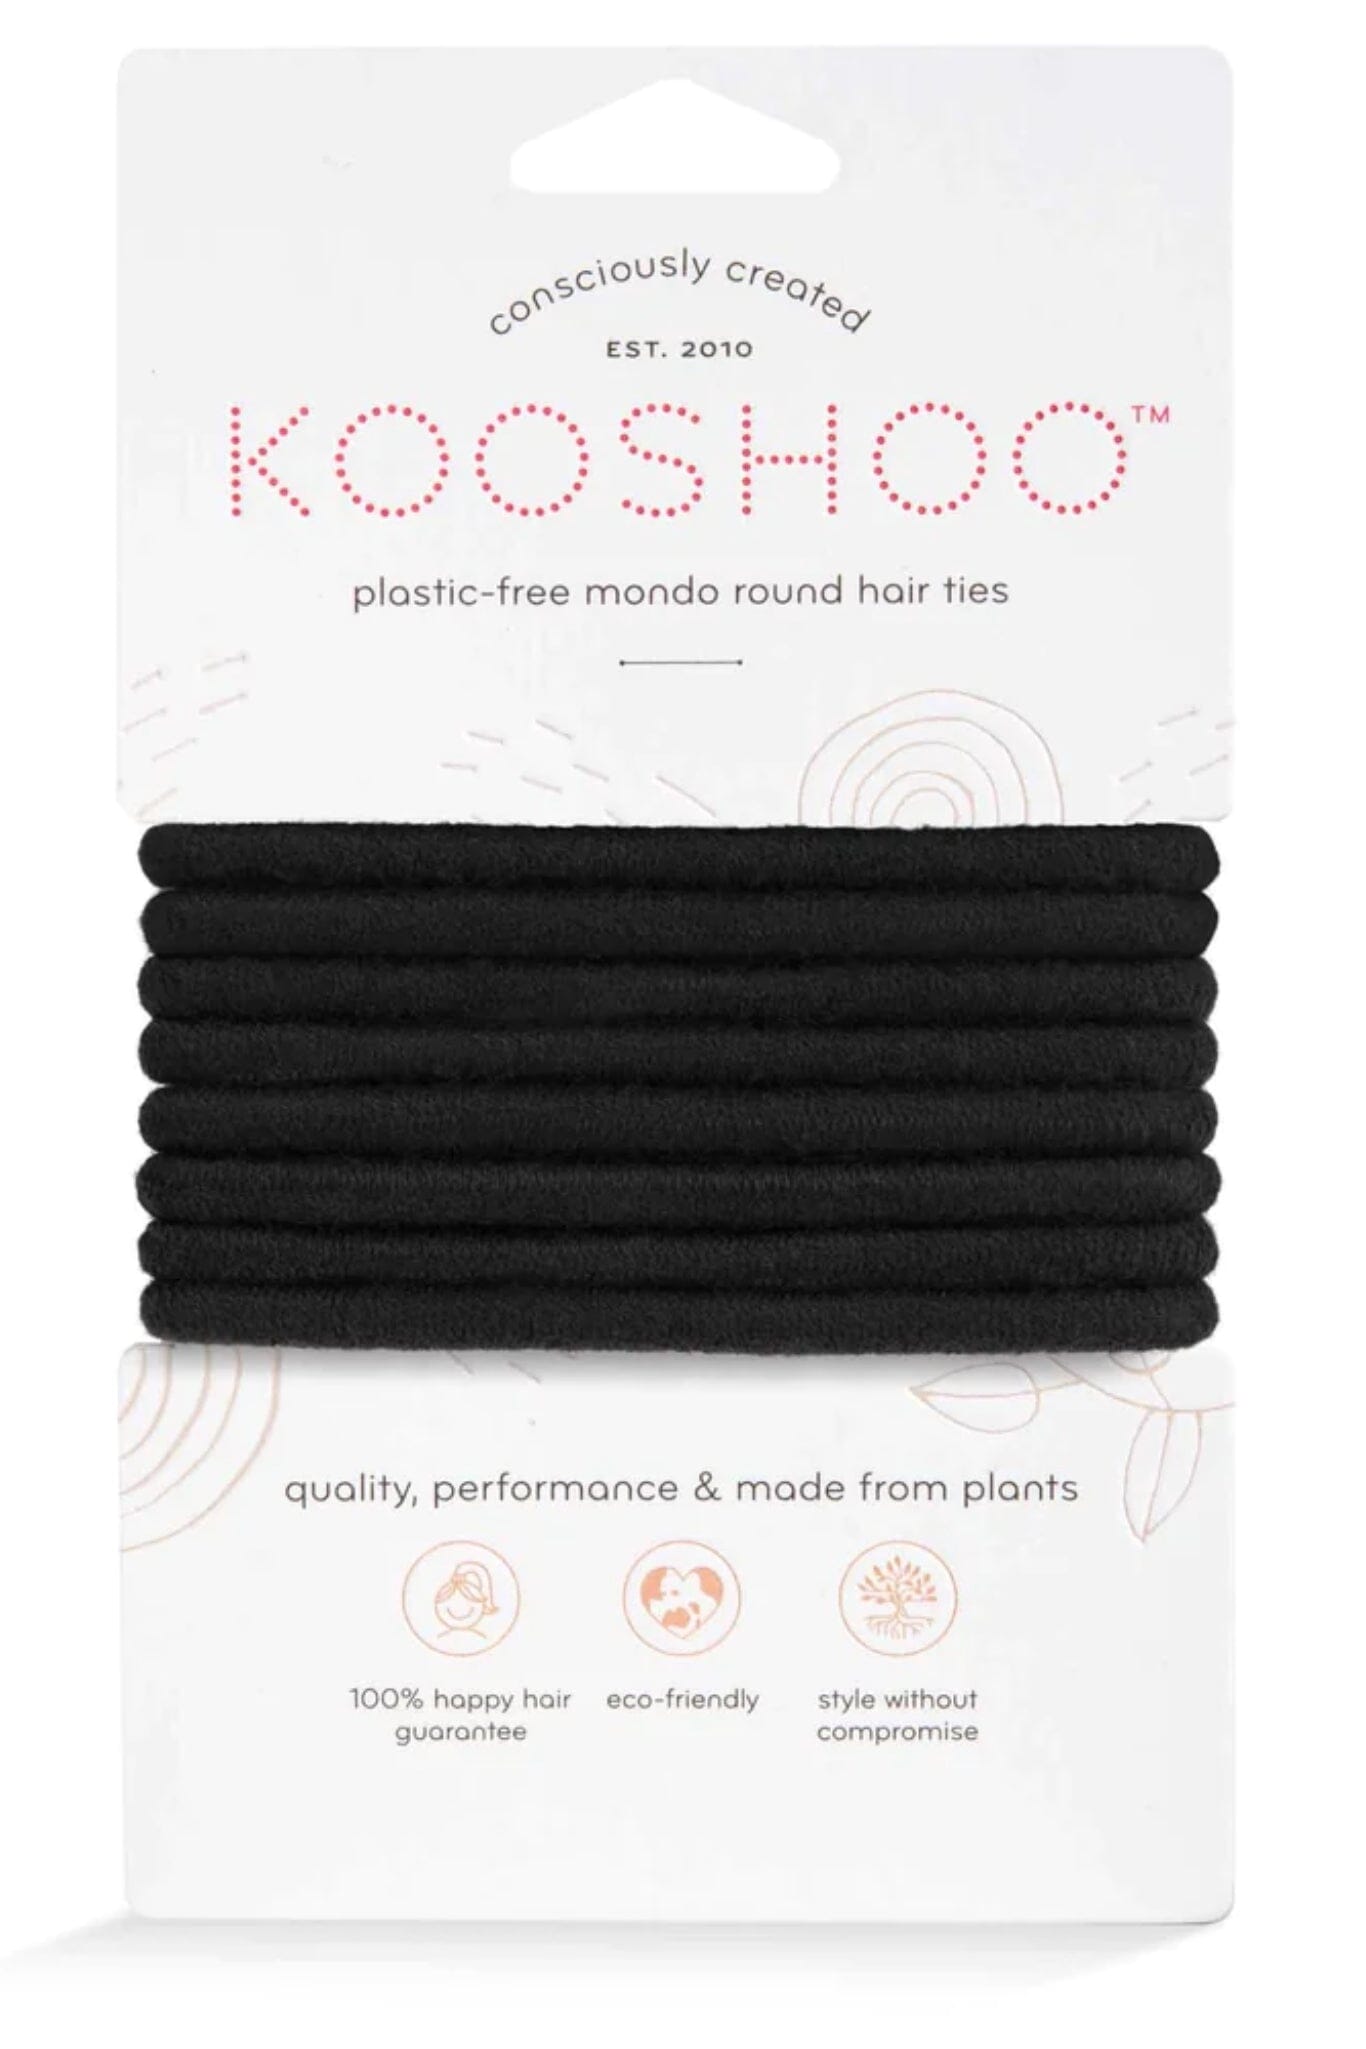 Kooshoo Organic Round Hair Ties - Black